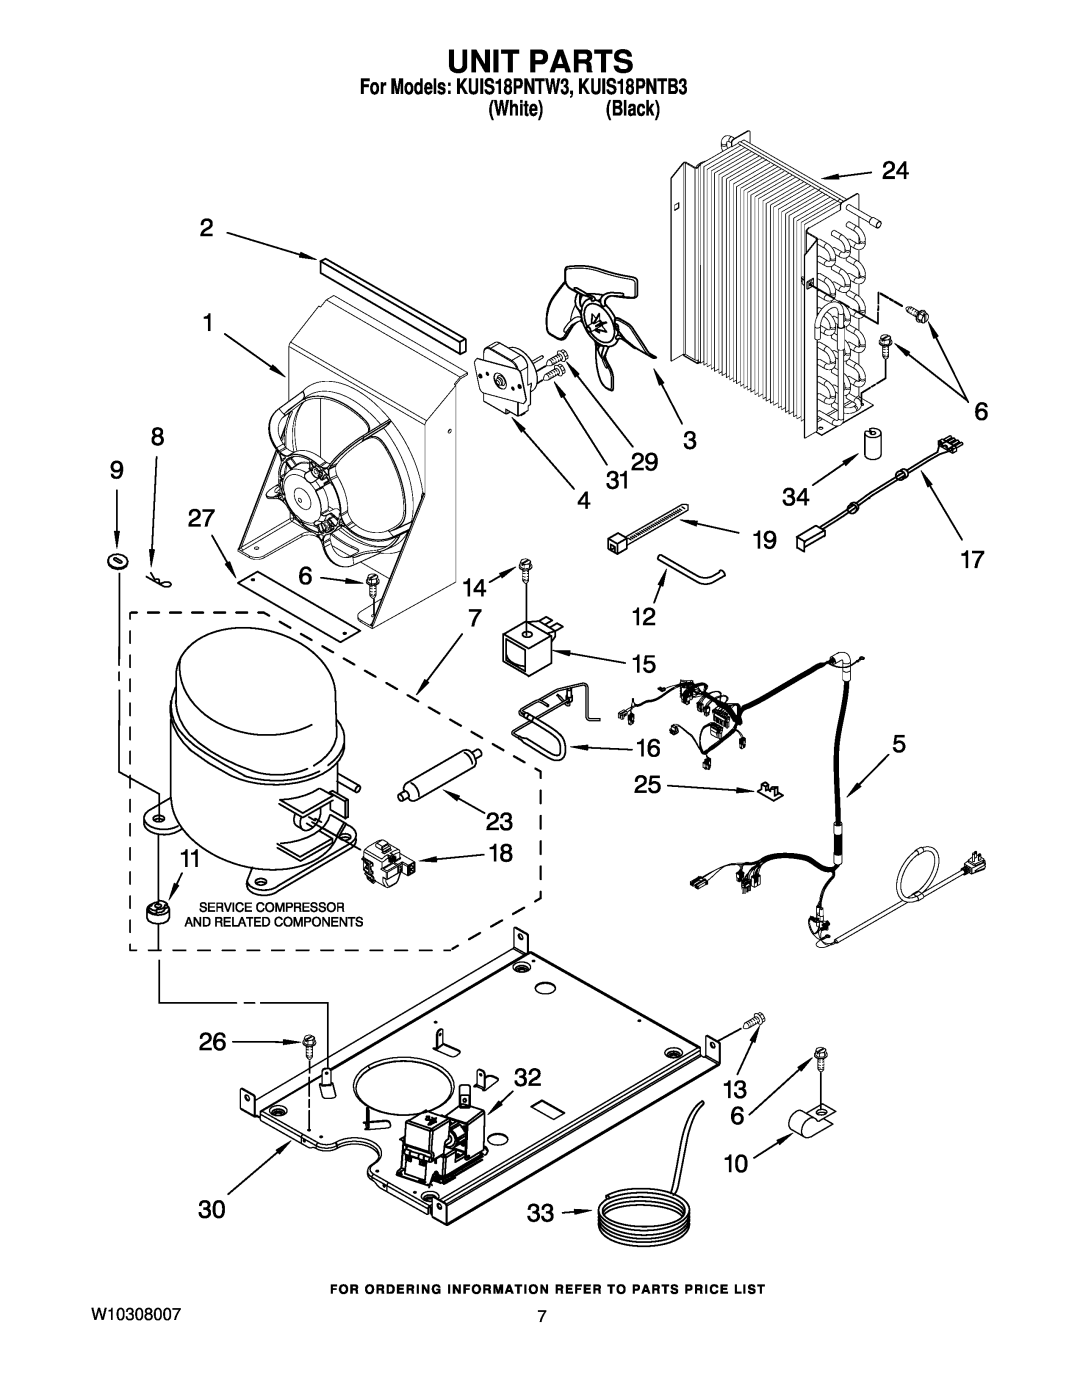 KitchenAid manual Unit Parts, For Models KUIS18PNTW3, KUIS18PNTB3 White Black 